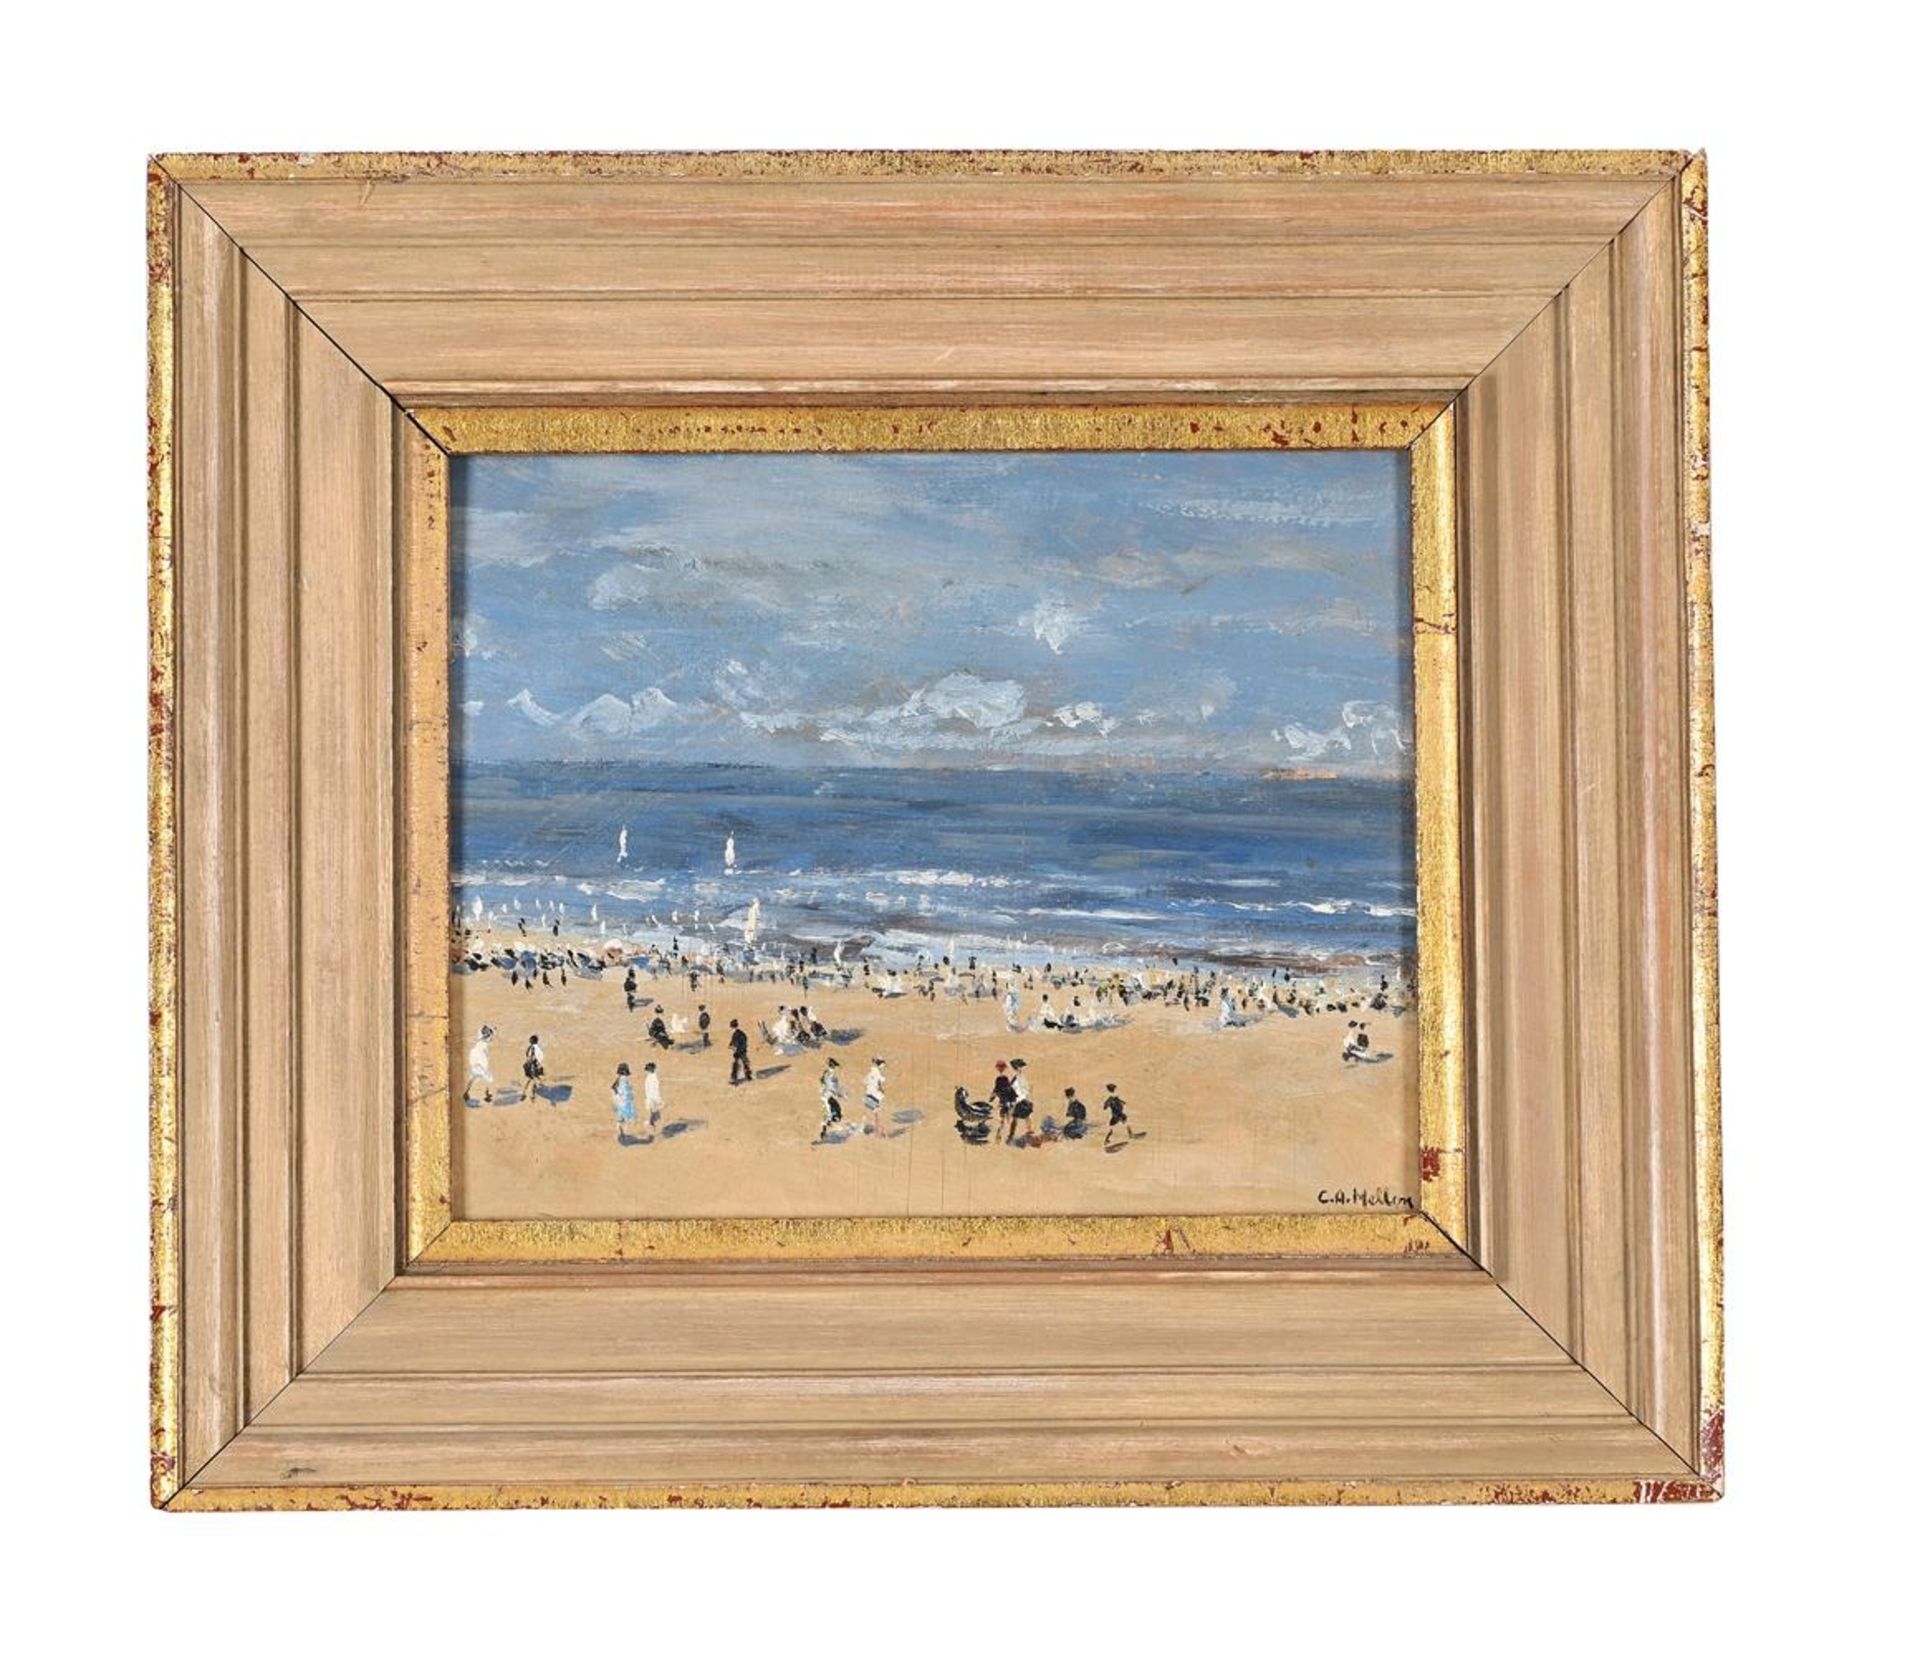 λ CAMPBELL ARCHIBALD MELLON (BRITISH 1876-1955), FIGURES ON THE BEACH - Image 2 of 3